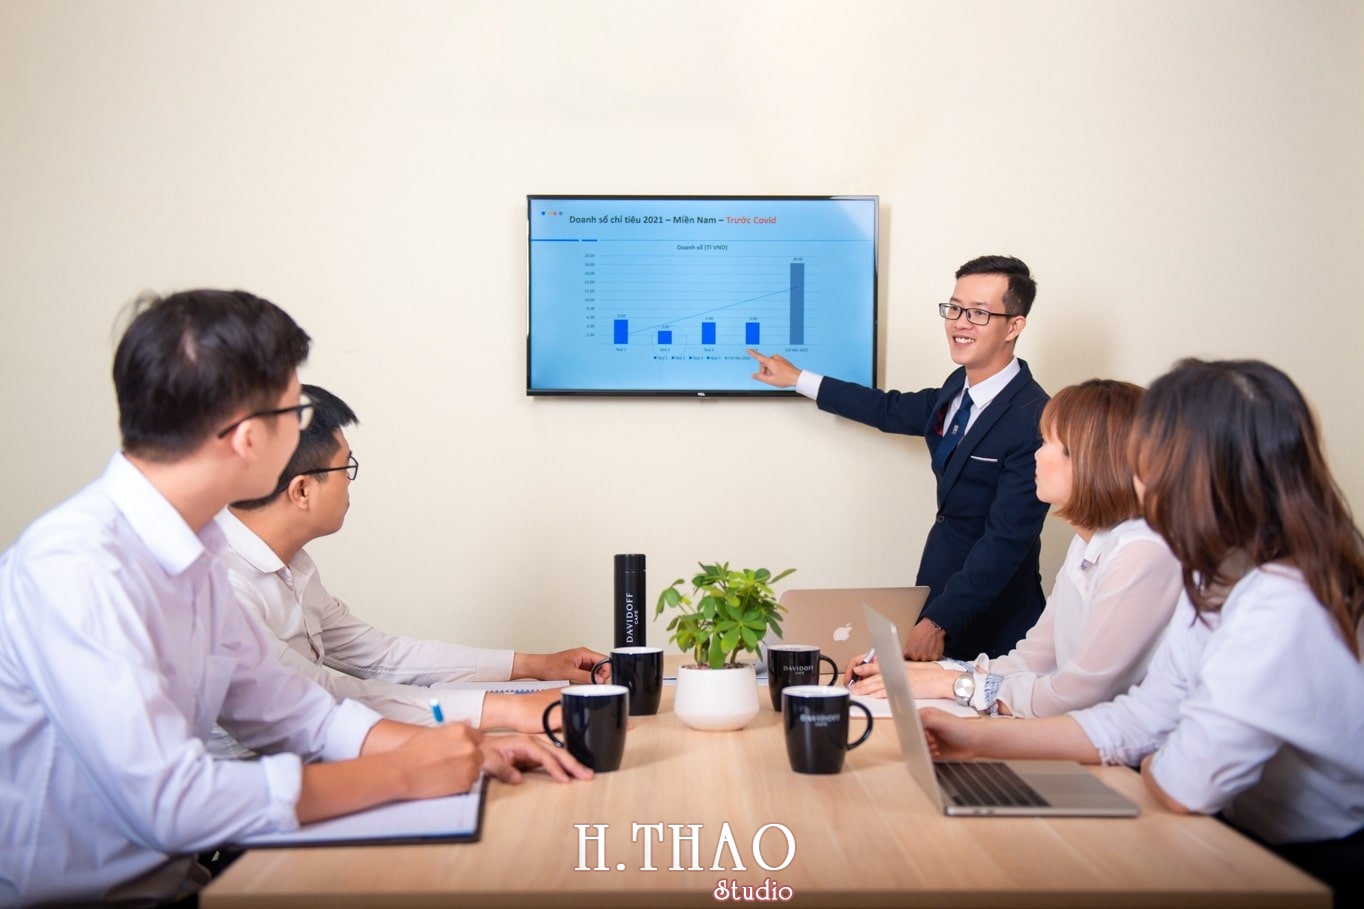 anh cong ty 3 min - Studio chụp ảnh quảng cáo doanh nghiệp tại Tp.HCM – HThao Studio